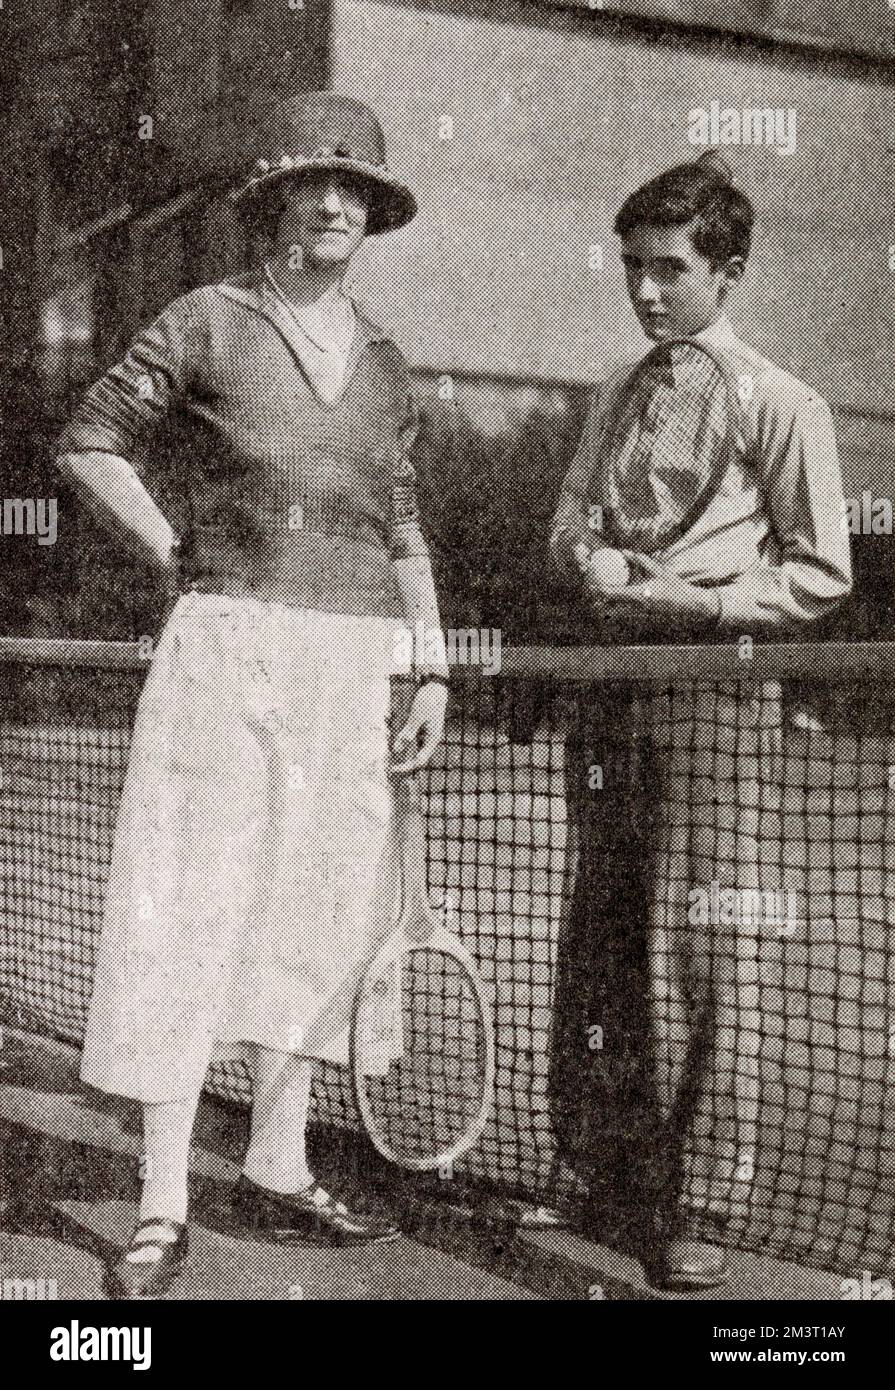 Lady Ennismore, früher Freda Vanden-Bempde-Johnstone, fotografierte mit ihrem zweiten Sohn, dem Honig Richard Hare (1907-1966), auf einem Tennisplatz, wahrscheinlich im Queen's Club. Stockfoto